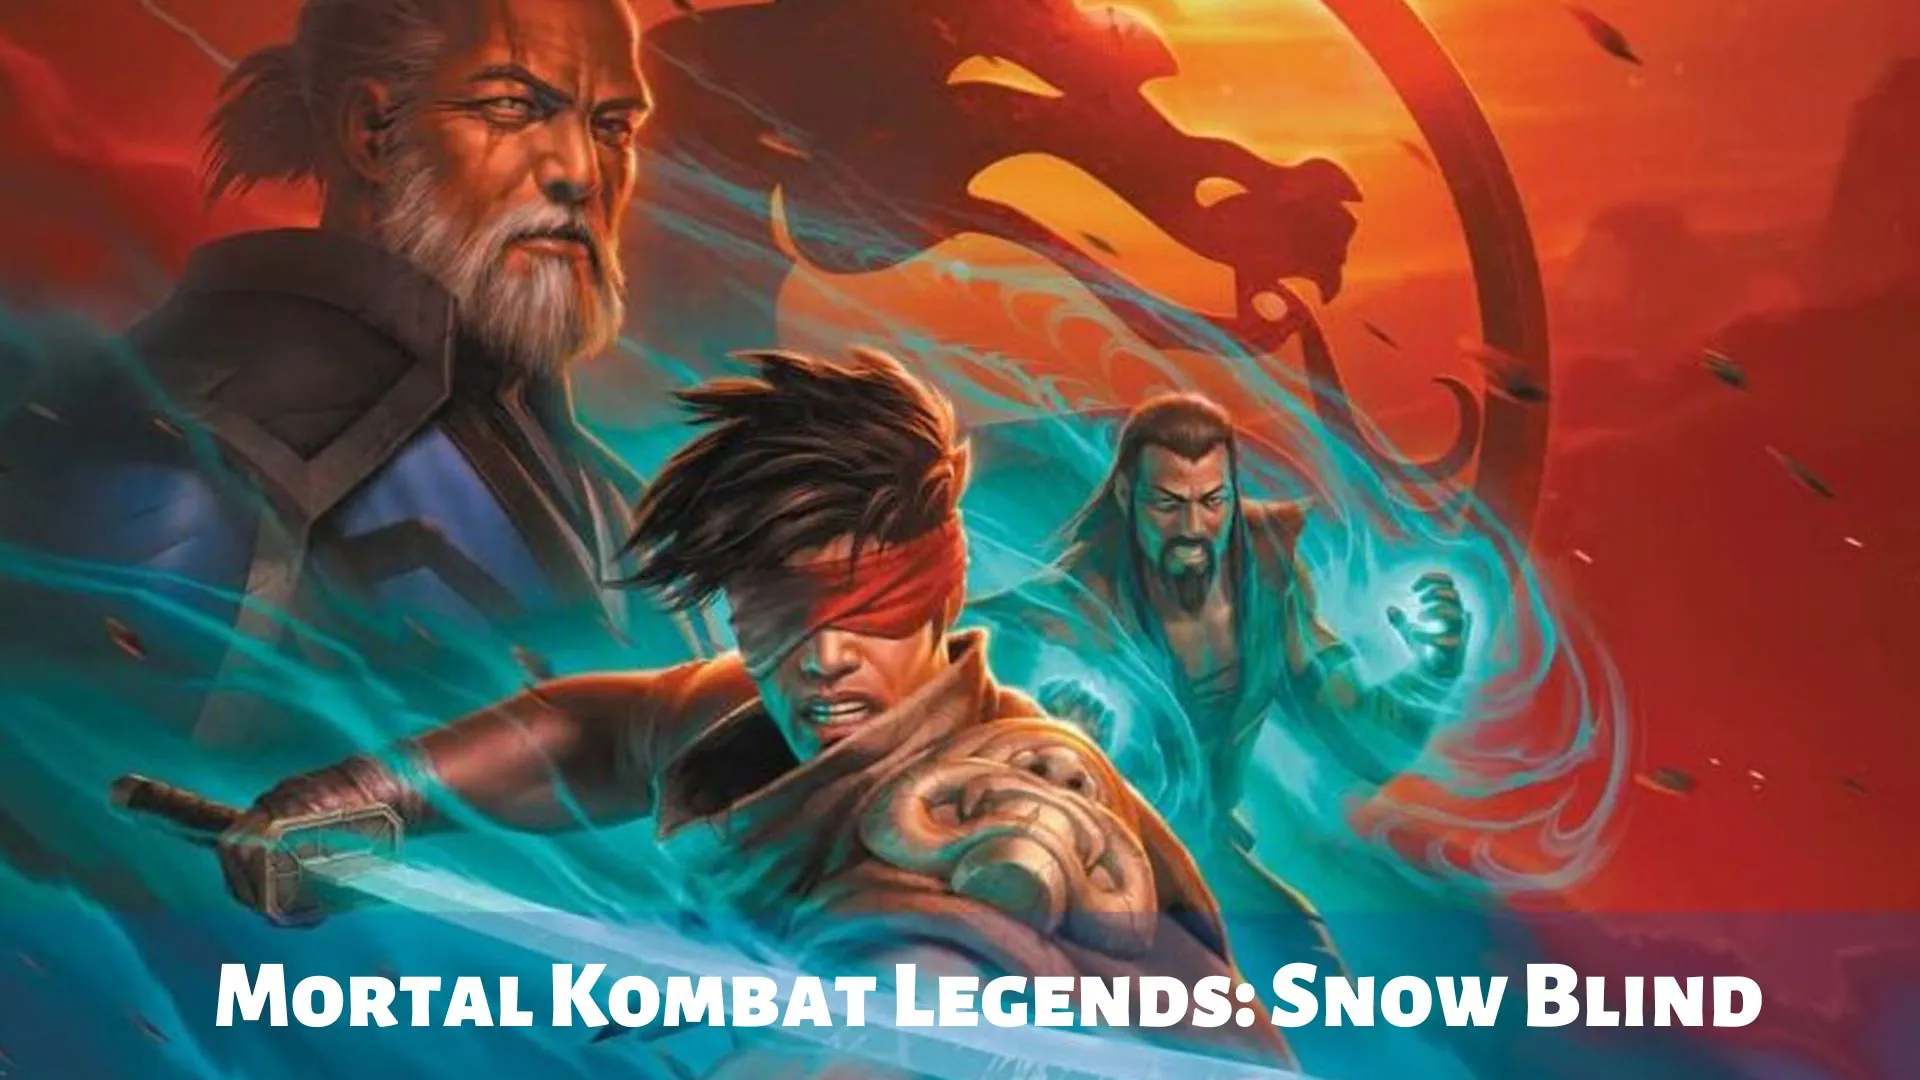 Mortal Kombat Legends: Snow Blind Parents Guide | Age rating